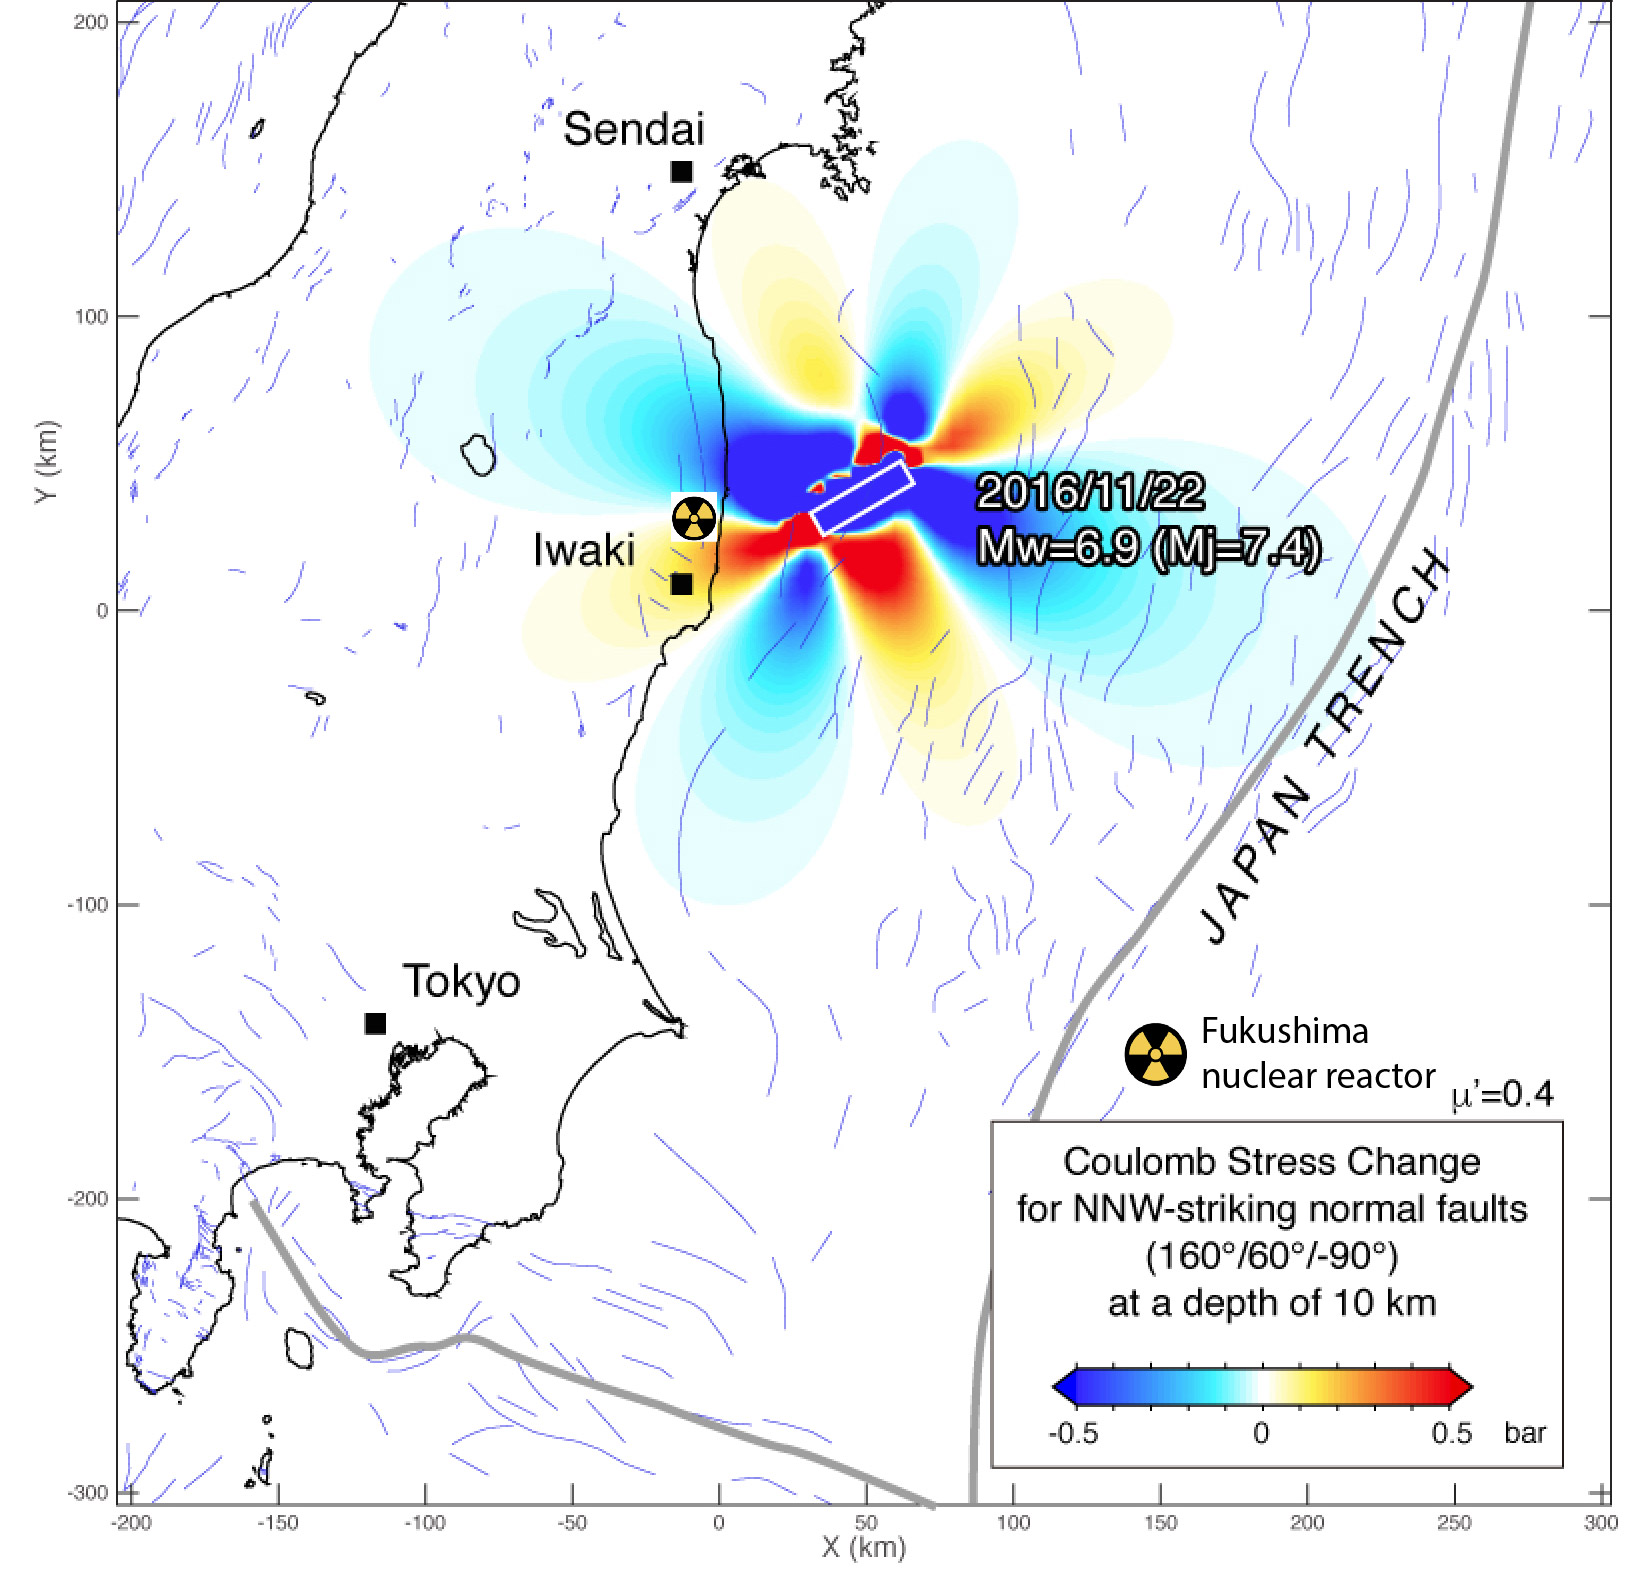 japan-earthquake-map-coulomb-analysis-fukushima